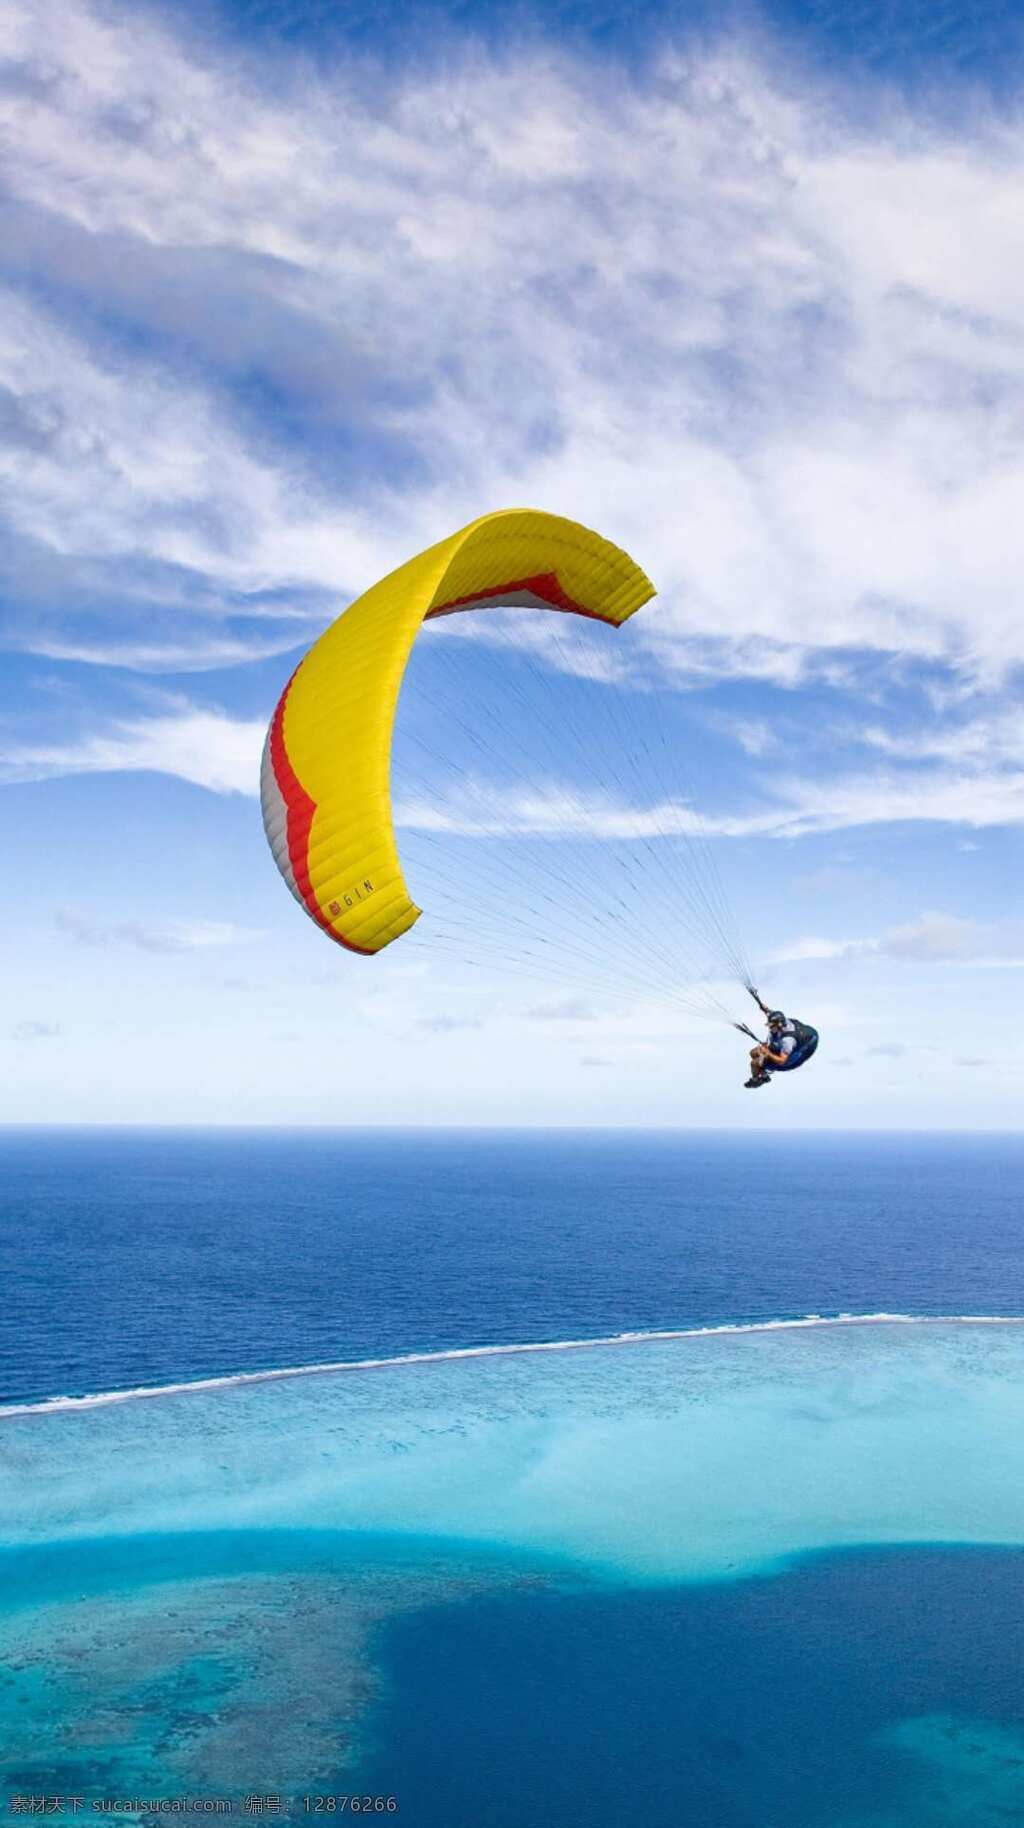 低空跳伞 极限运动 滑翔项目 蓝天 白云 大海 碧蓝的海水 生活百科 娱乐休闲